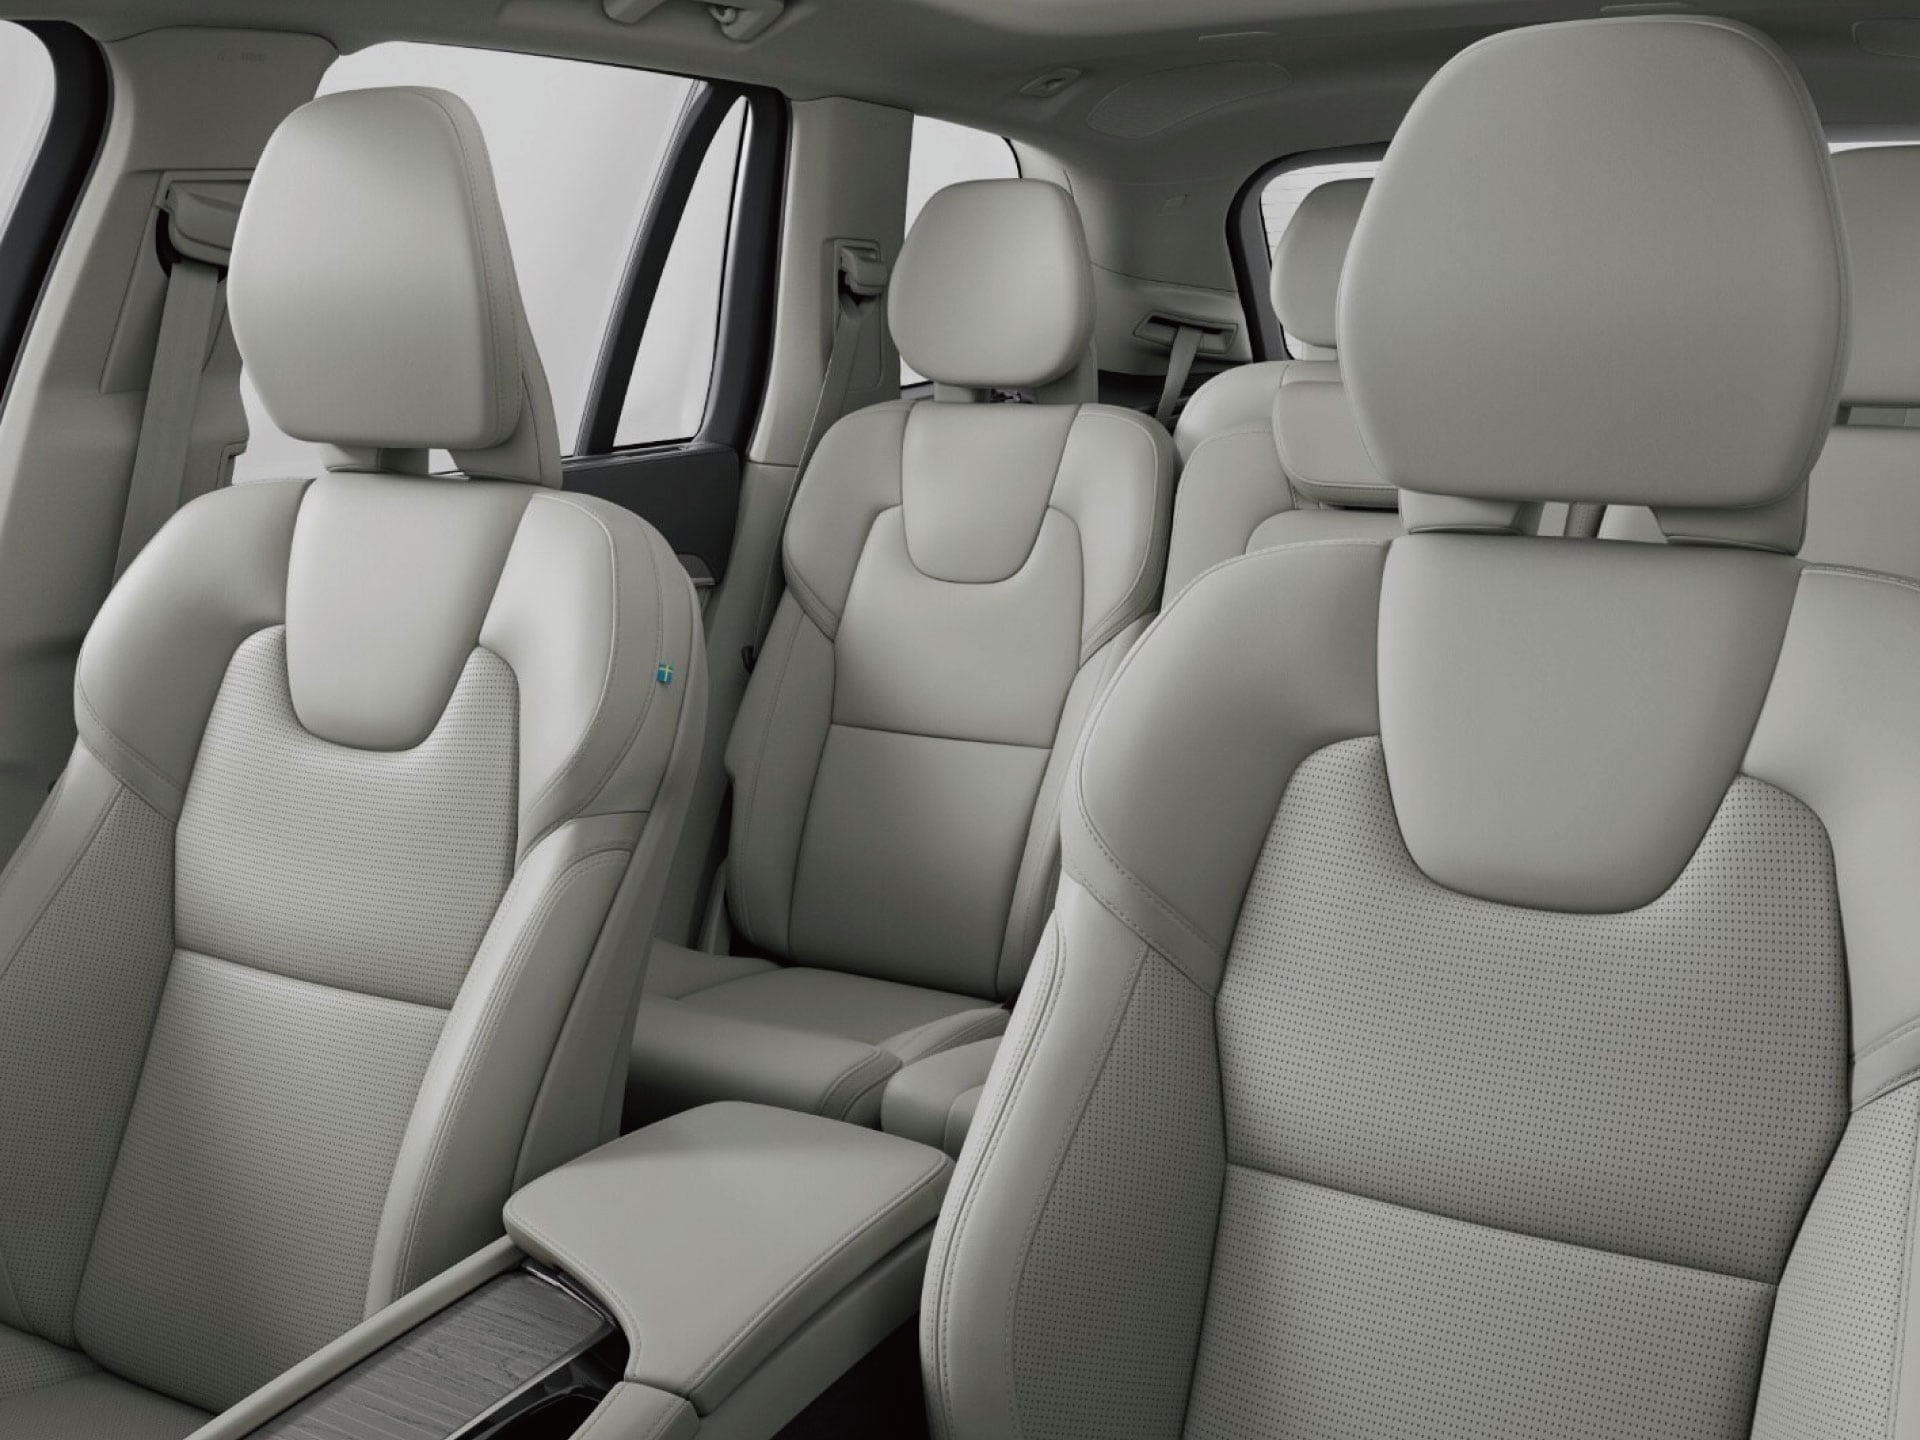 Volvo XC90 Recharge 寬敞舒適的內裝。